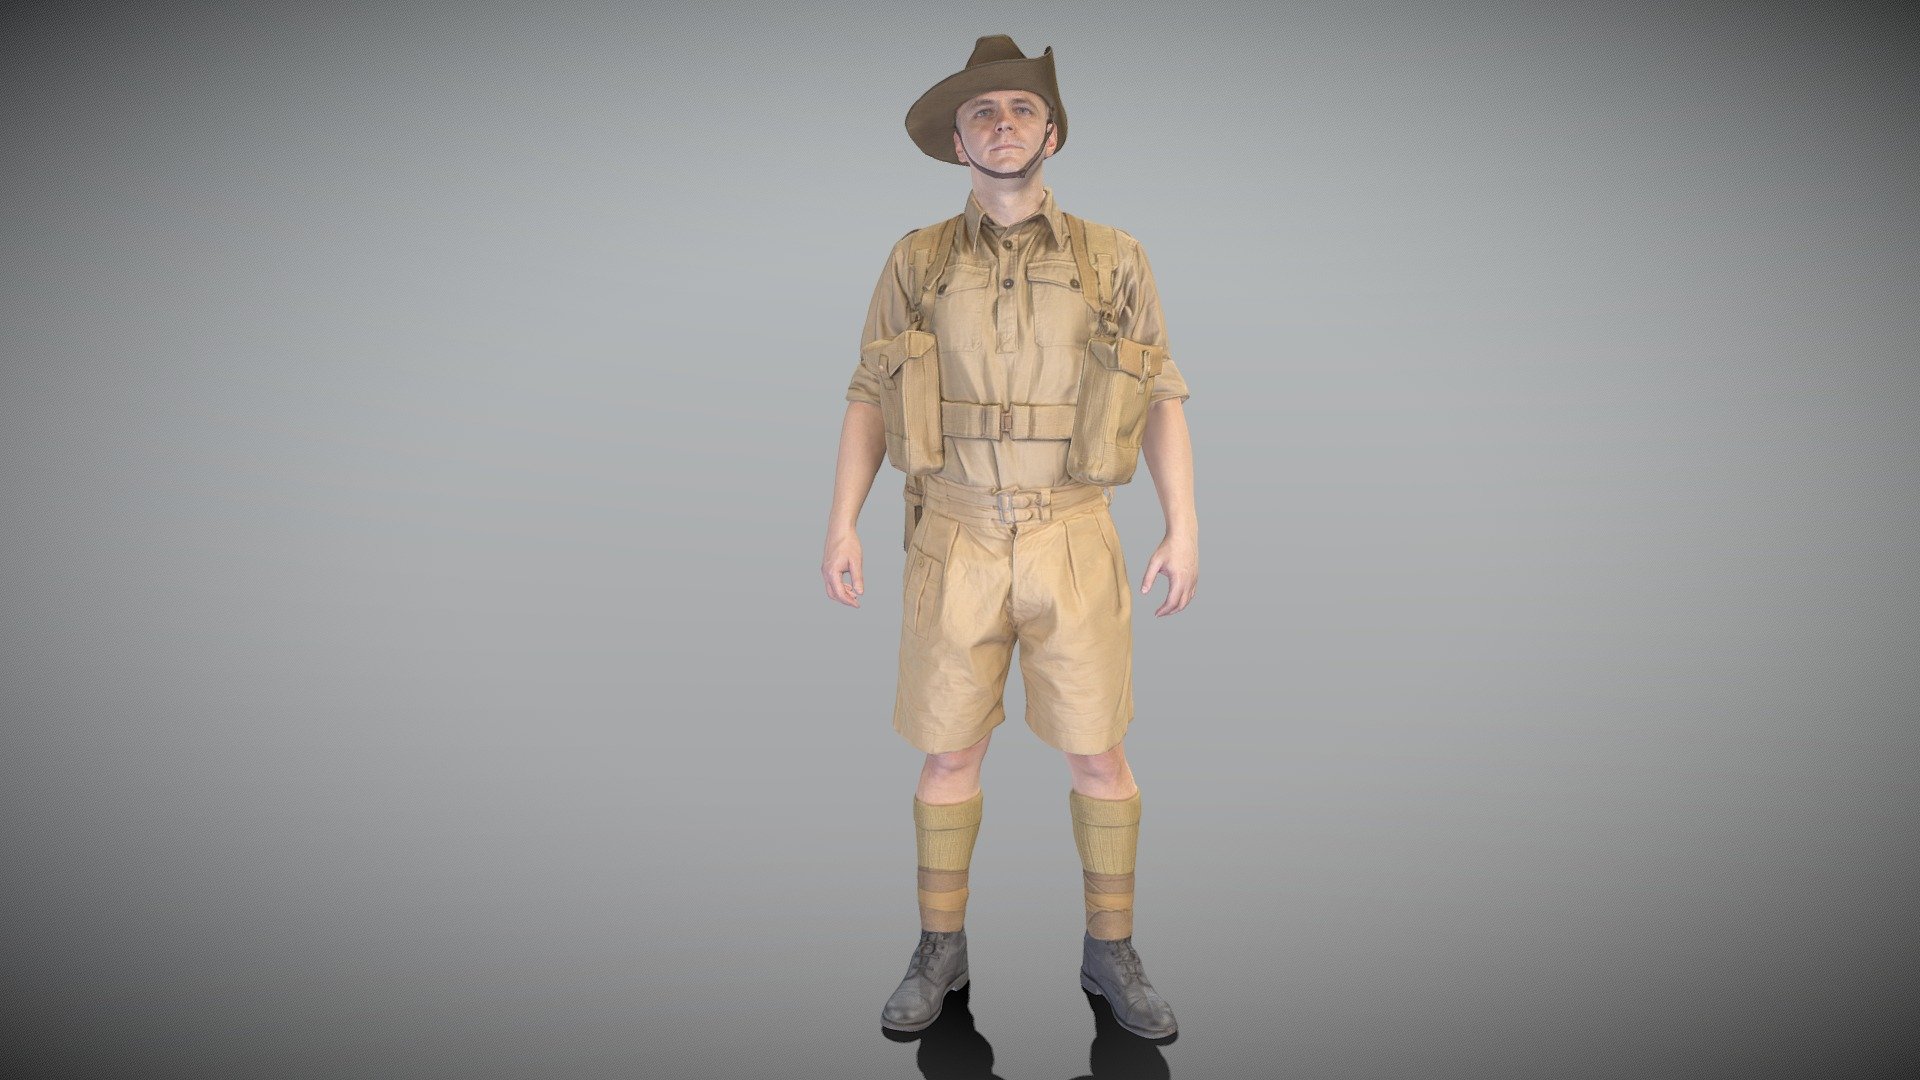 Australian infantryman character from WW2 272